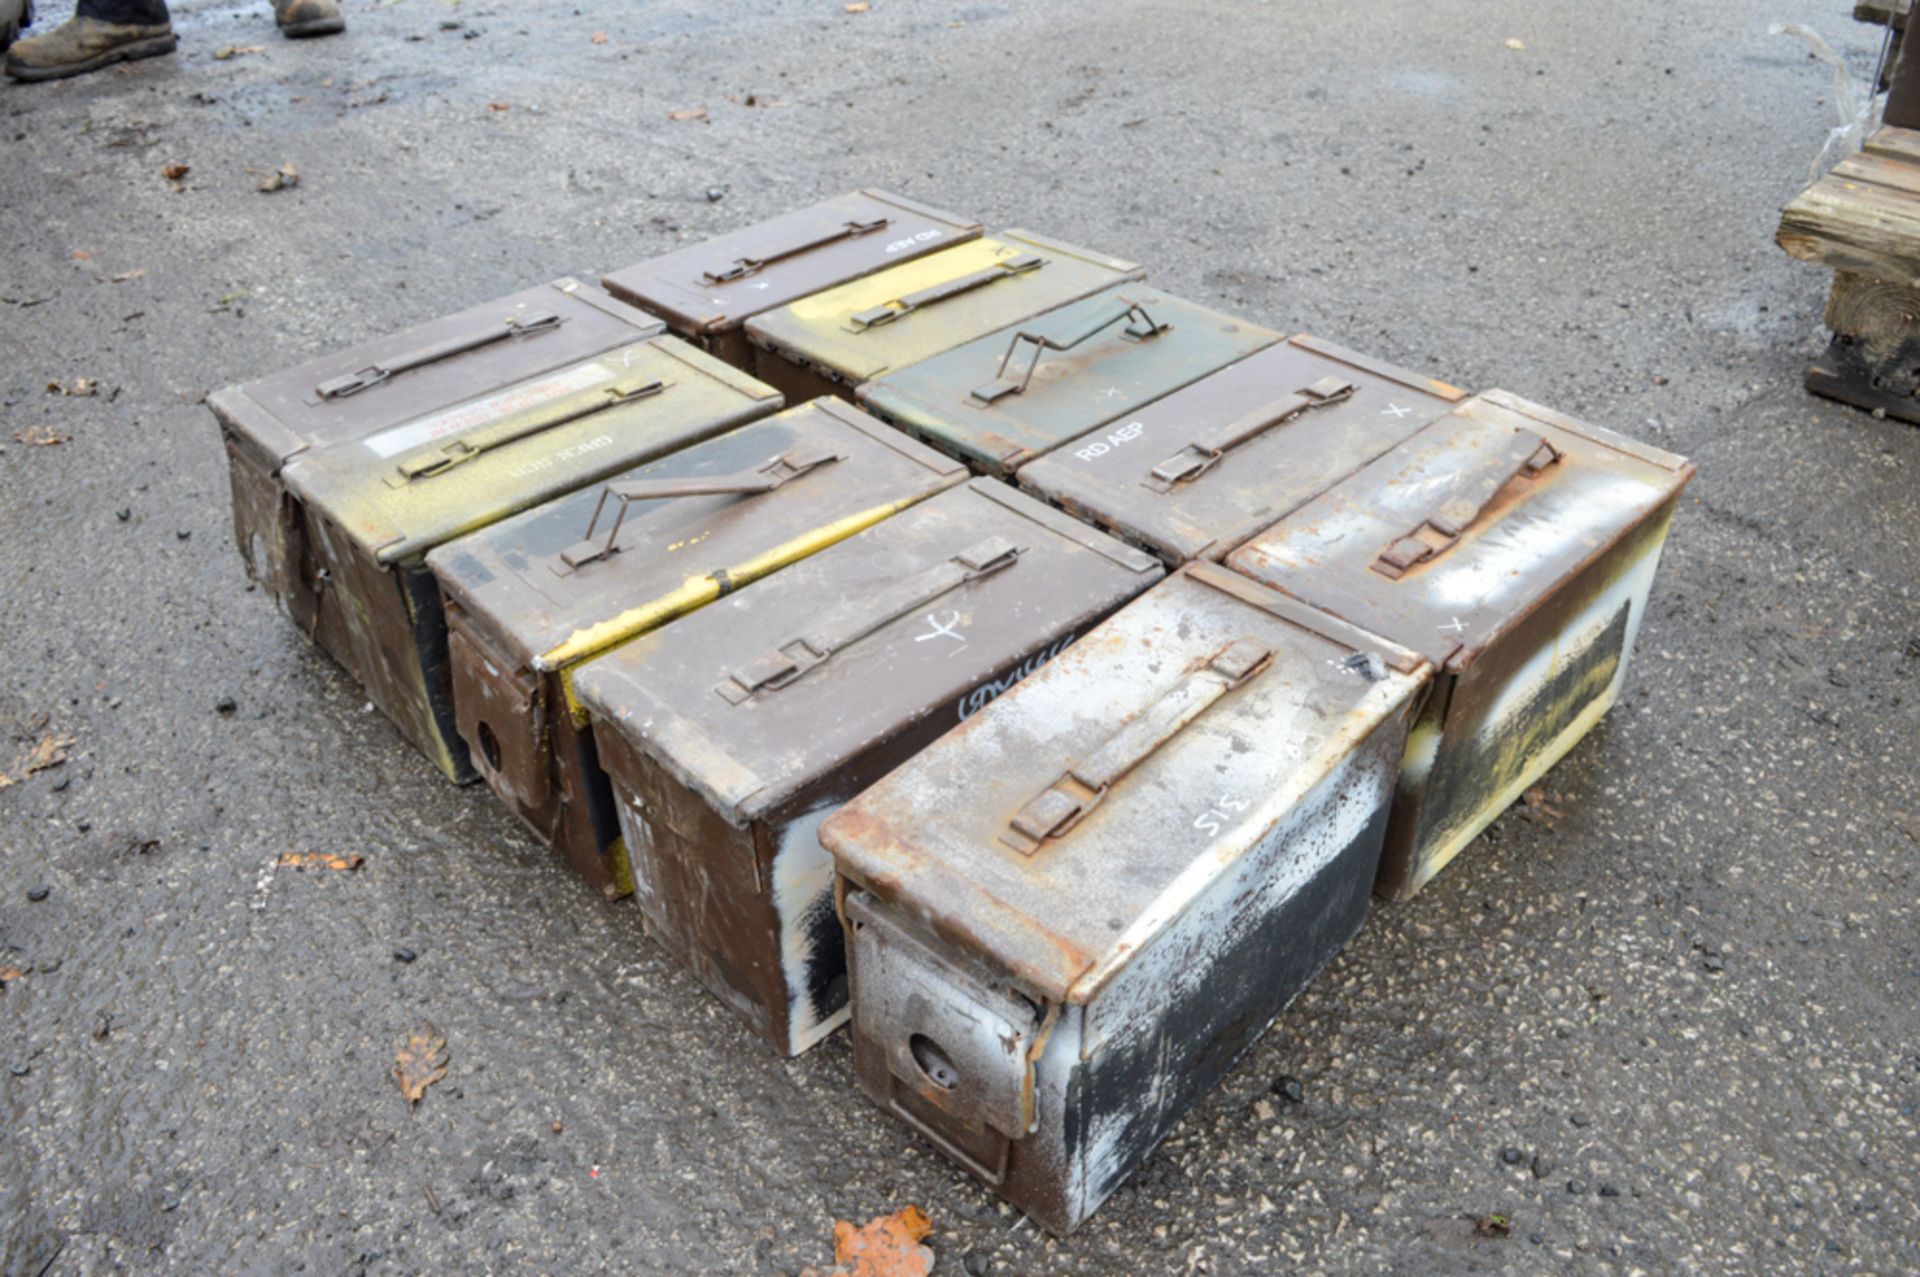 10 - ammunition boxes (Ex MOD) Dimensions: 30cm L x 14cm W x 19cm H